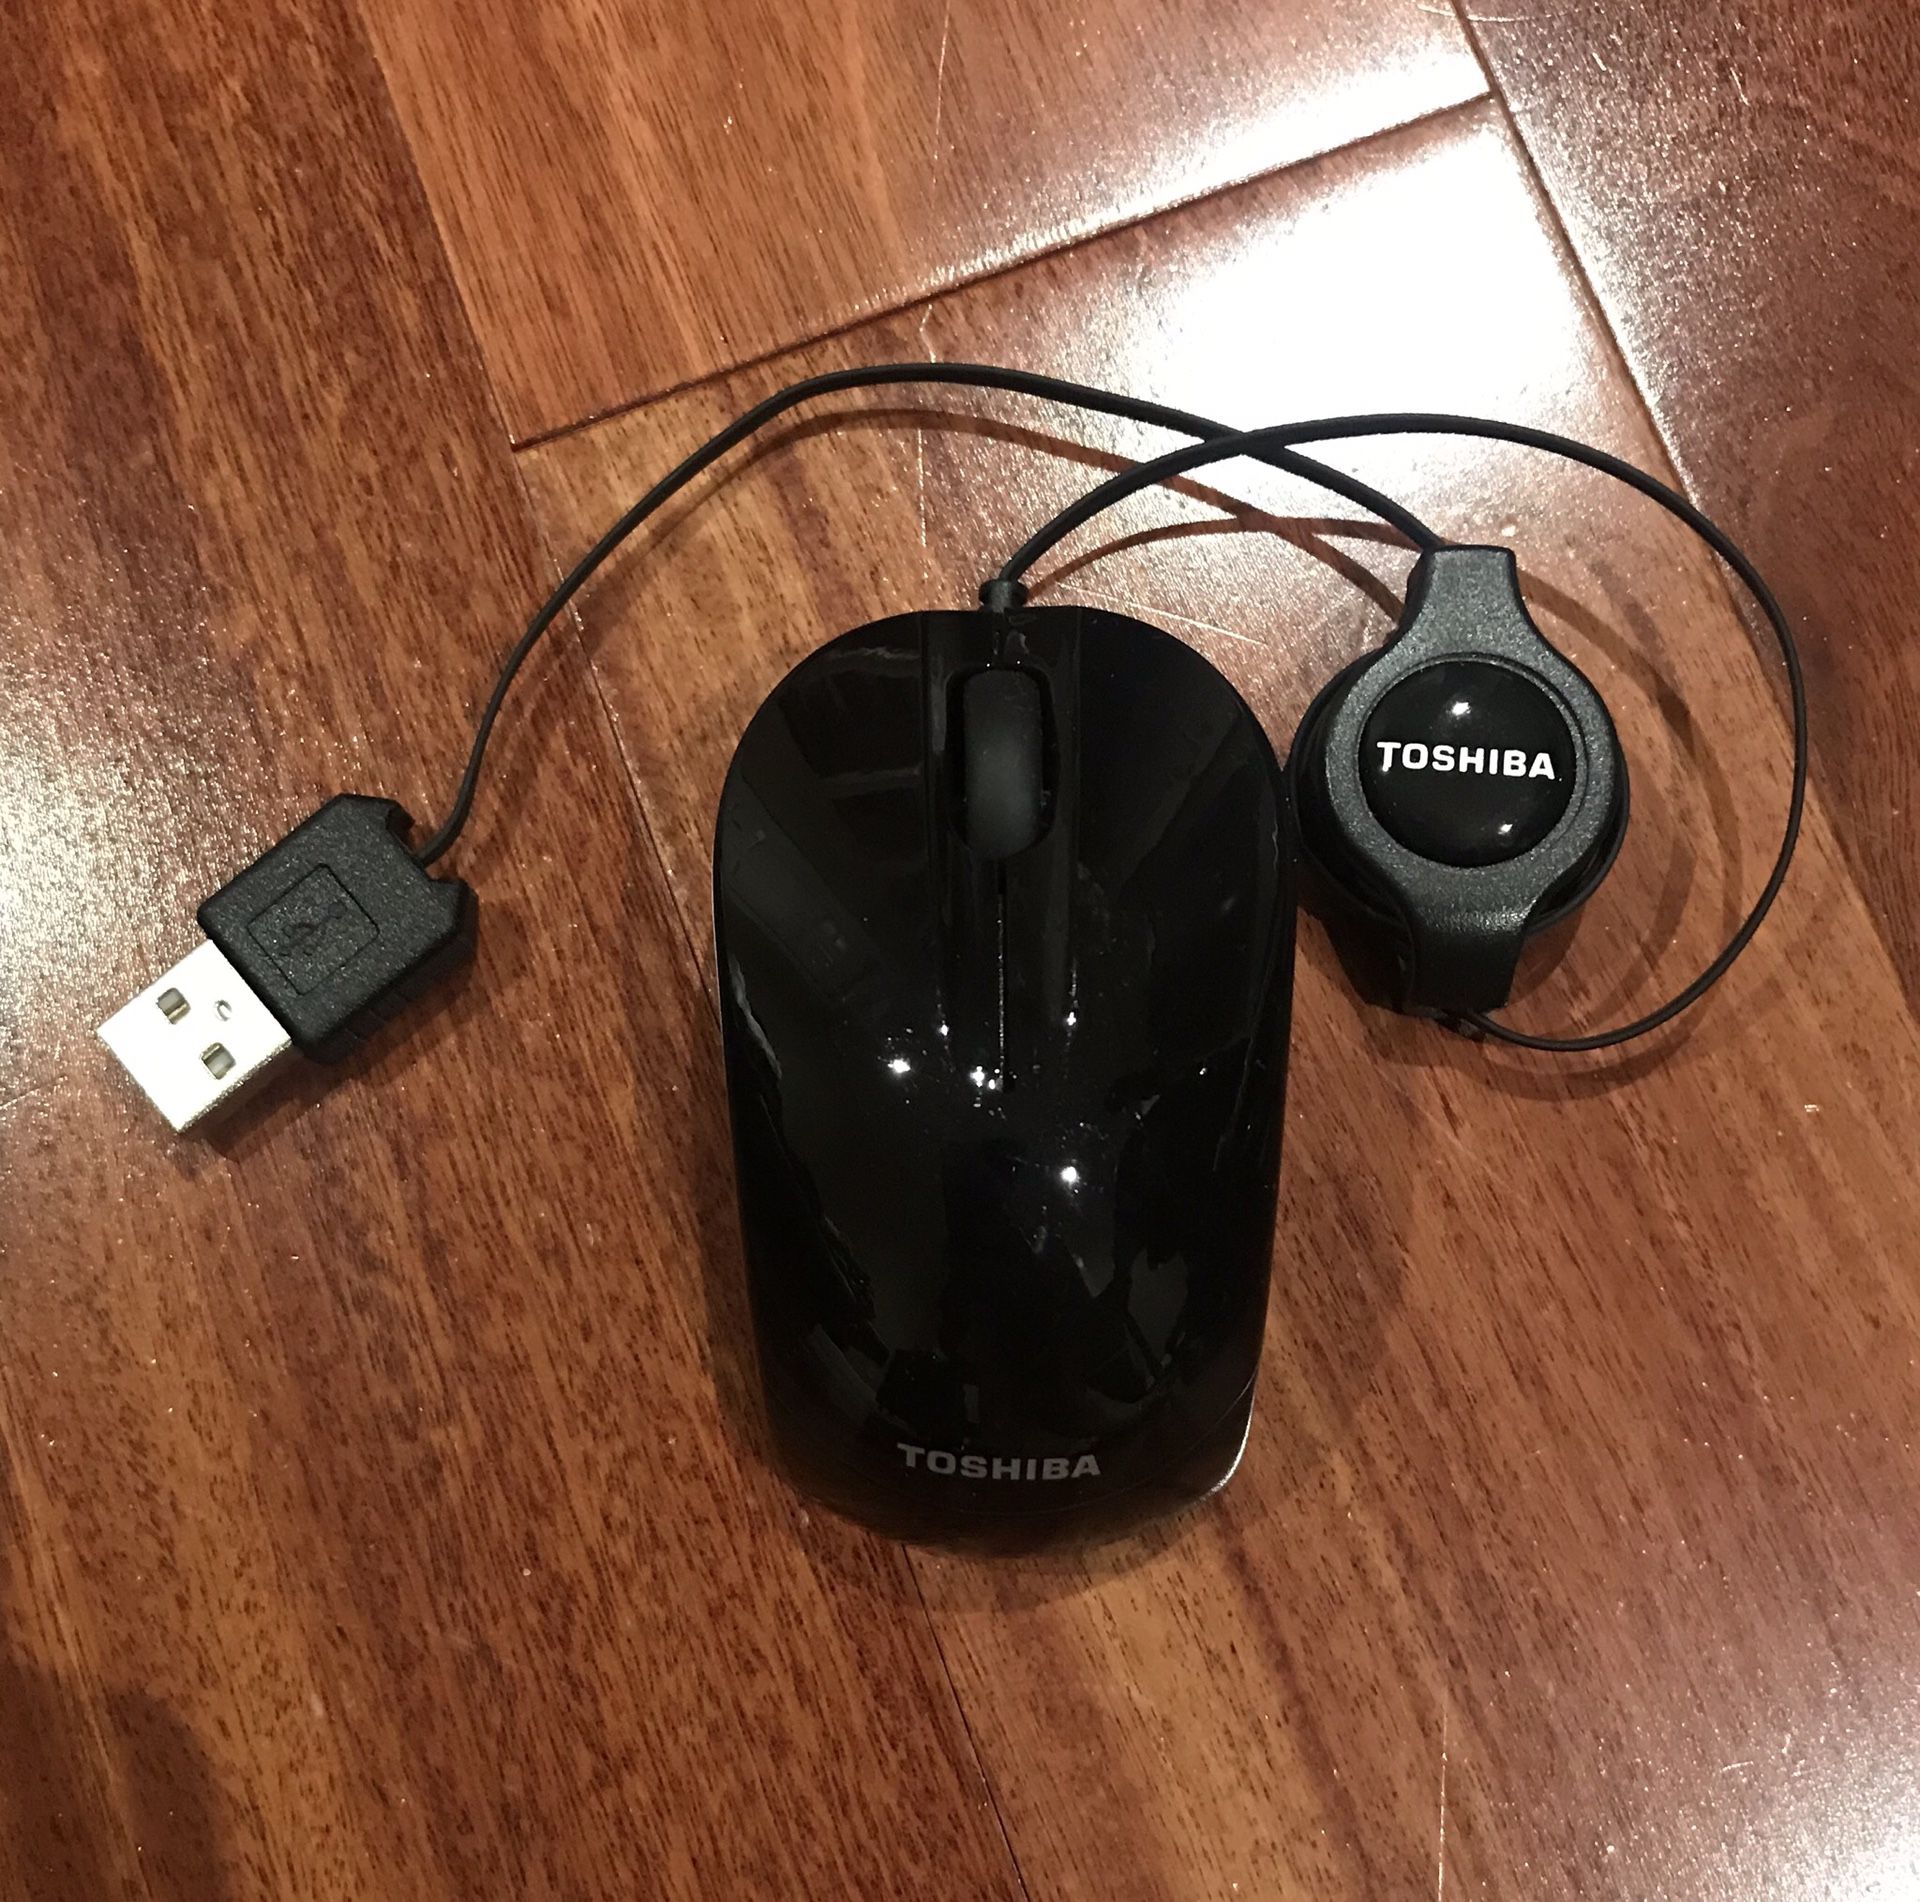 toshiba laptop mouse